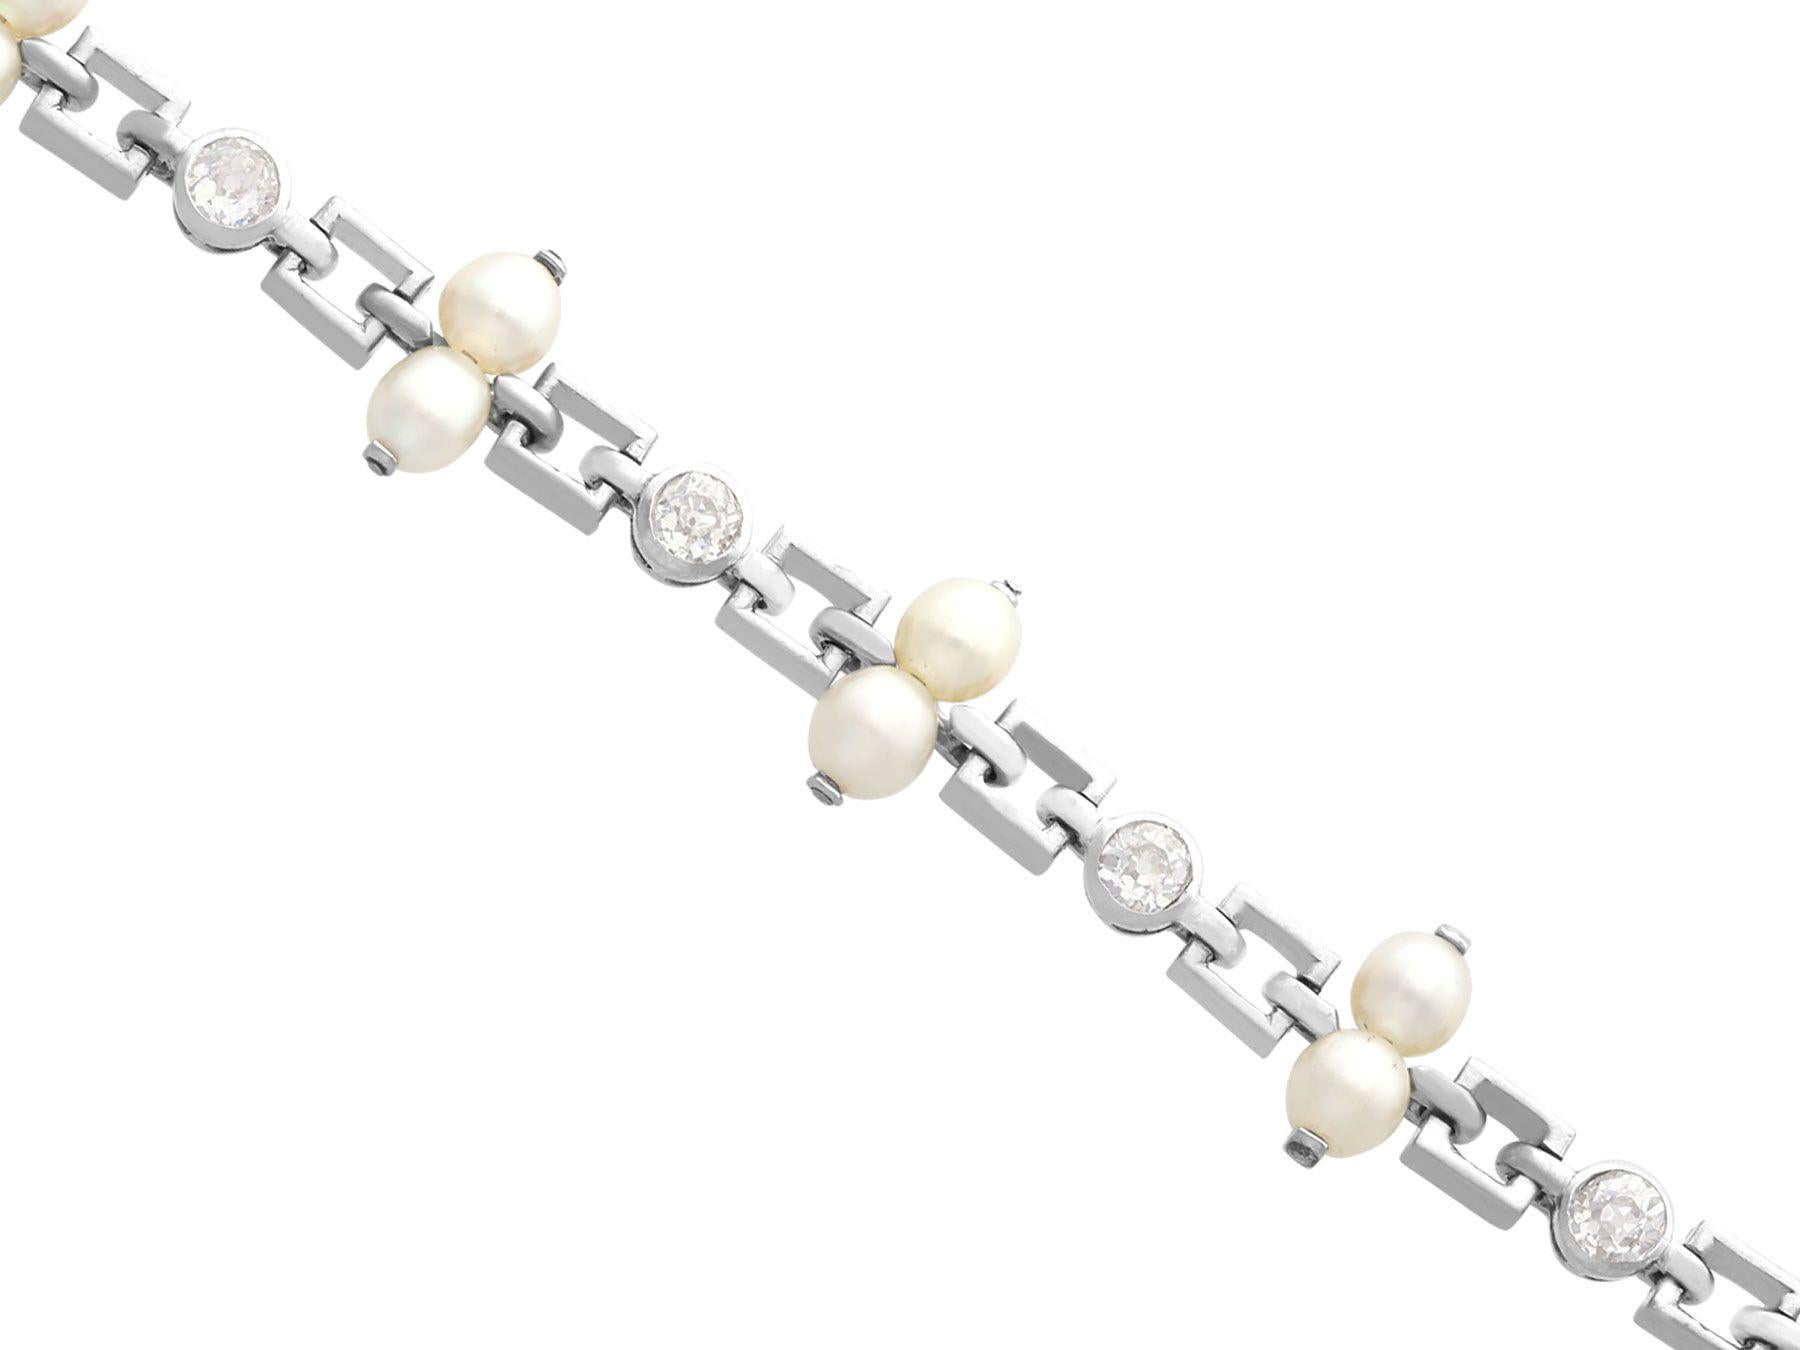 Un exceptionnel, fin et impressionnant bracelet vintage en platine de 0,82 carat de diamant et de perle naturelle dans le style Art of Vintage ; faisant partie de nos diverses collections de bijoux vintage et de bijoux de succession.

Cet